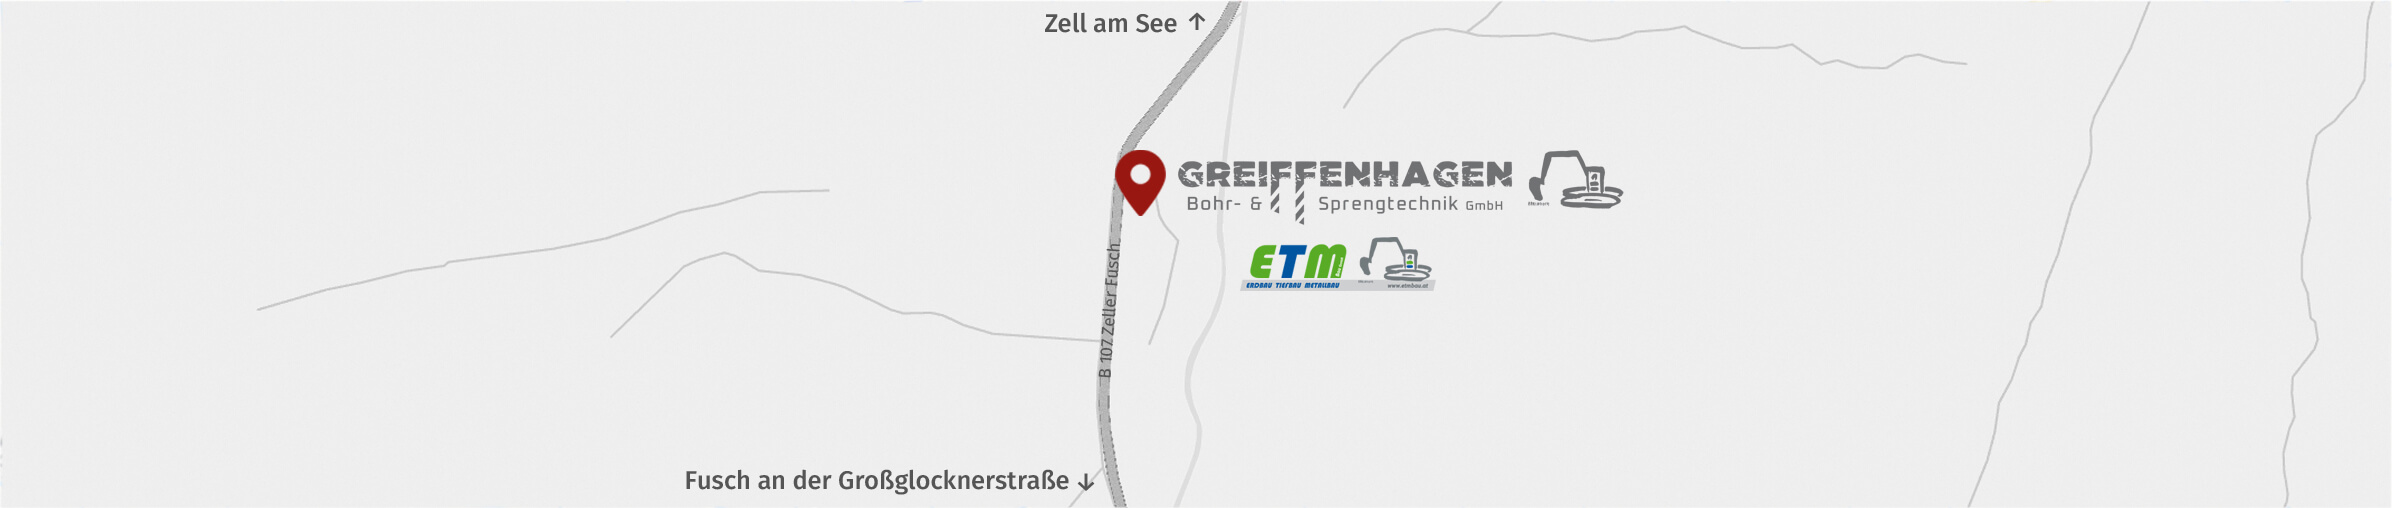 Greiffenhagen Bohr- und Sprengtechnik GmbH